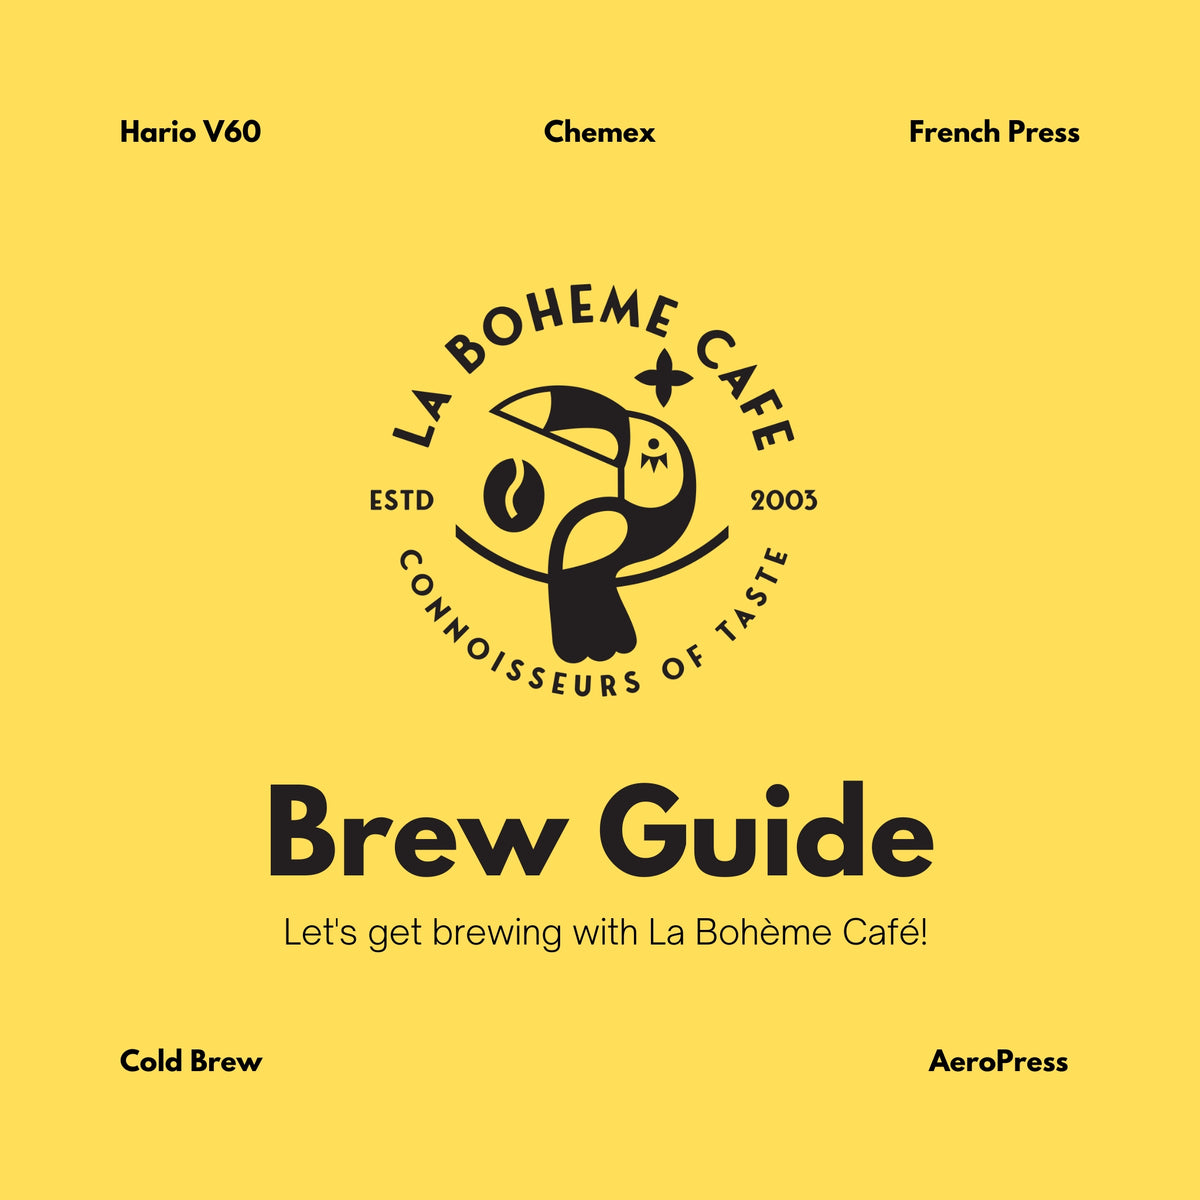 Brew Guide by La Boheme Cafe